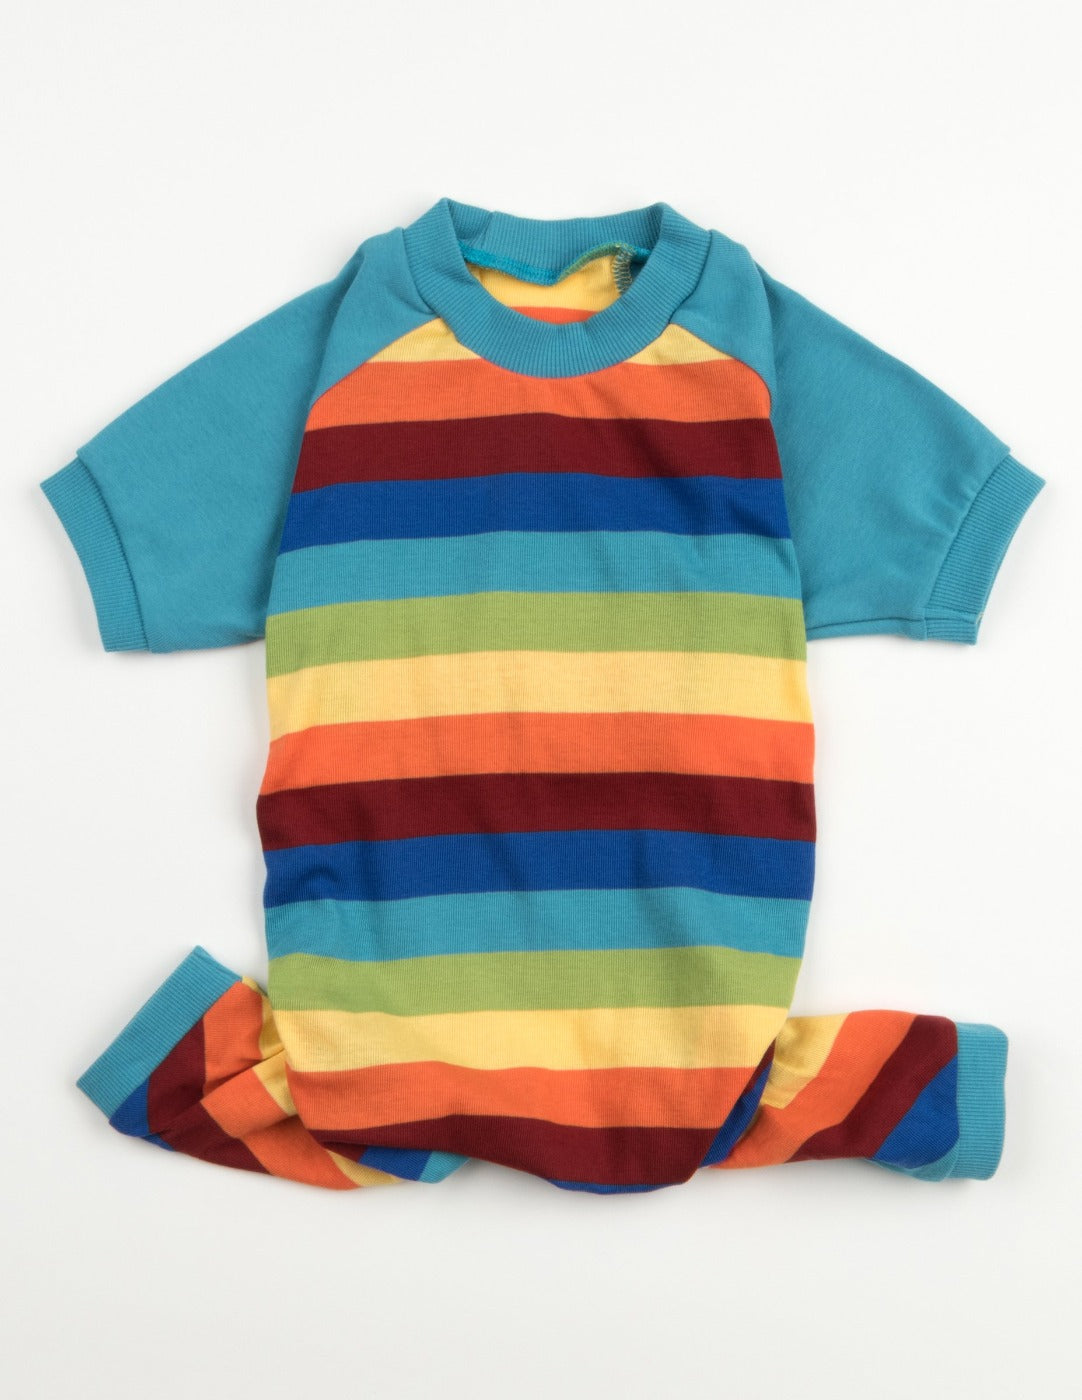 Mens Cotton Rainbow Boy Stripes Pajamas